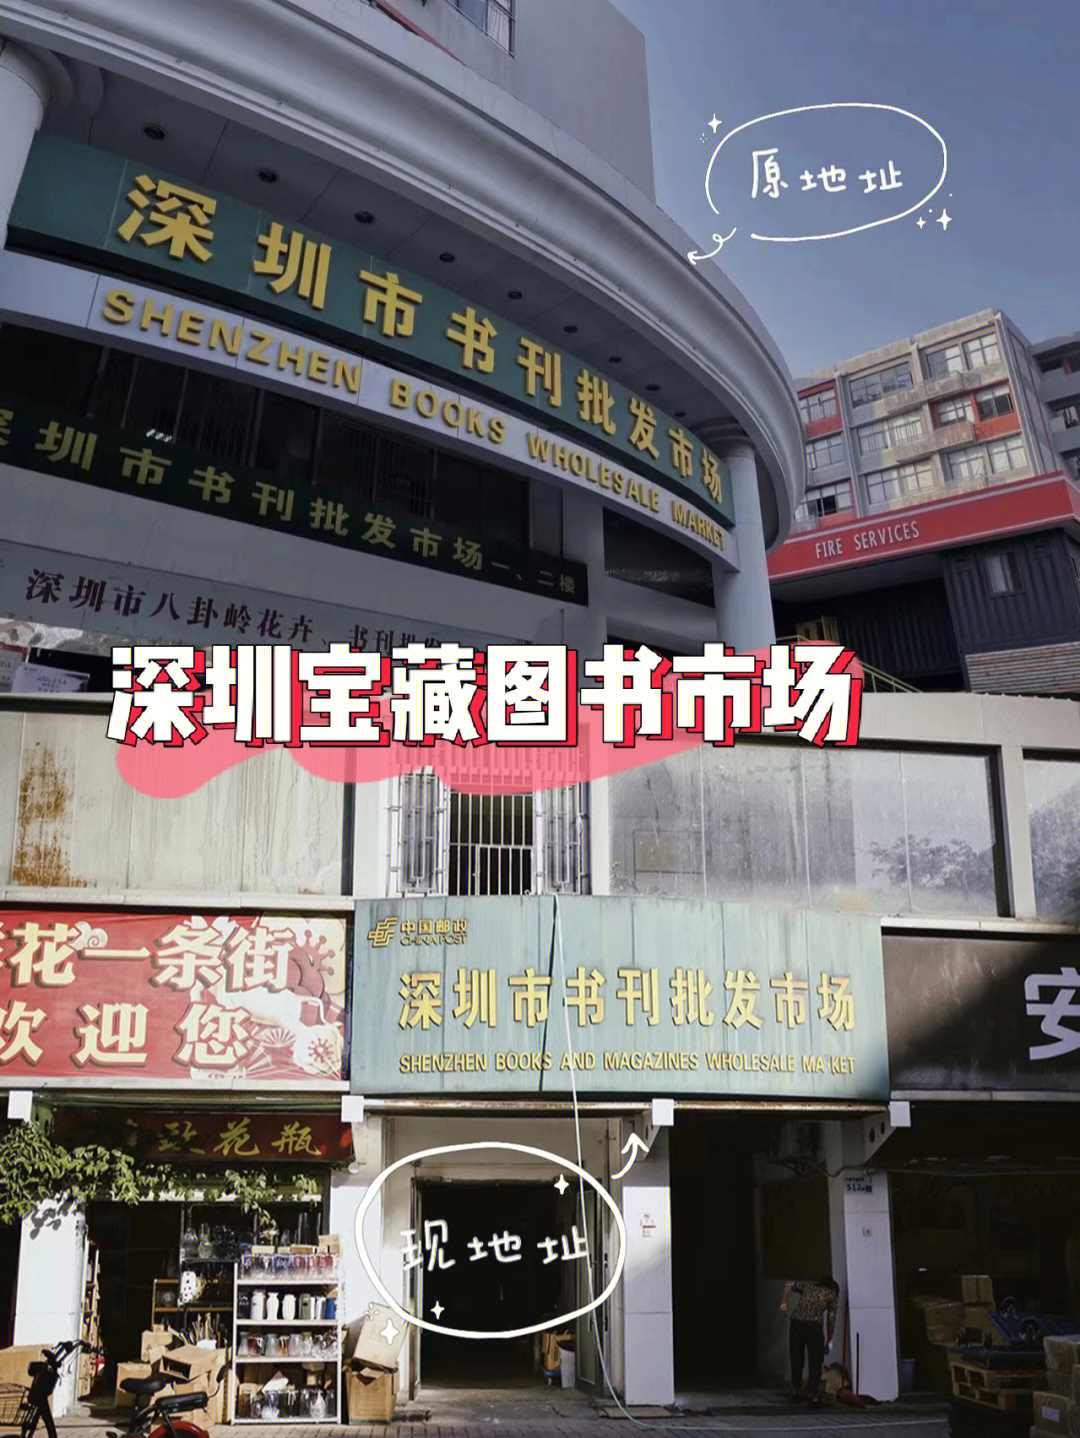 来深圳图书批发市场92尽情享受淘书的快乐